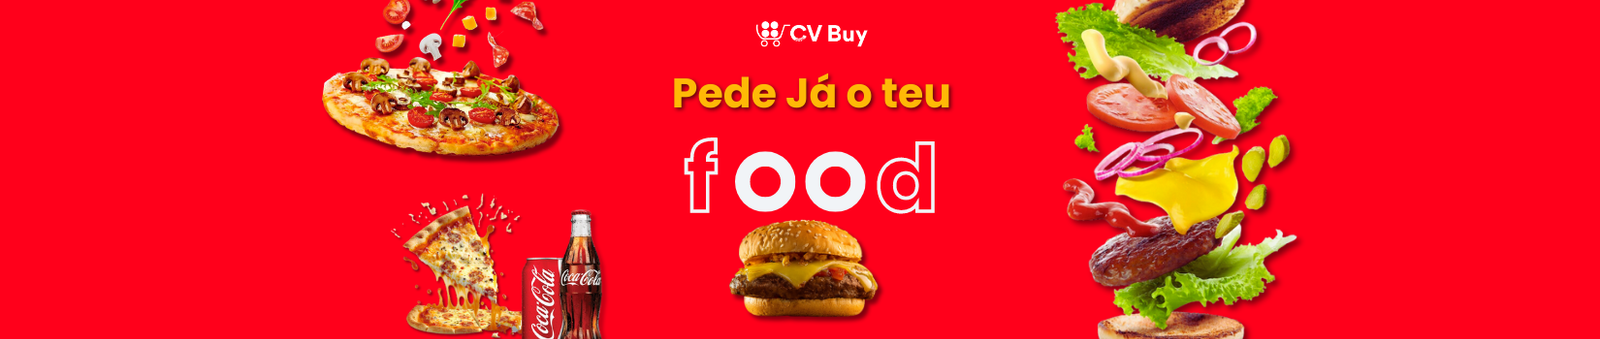 CV Buy Food